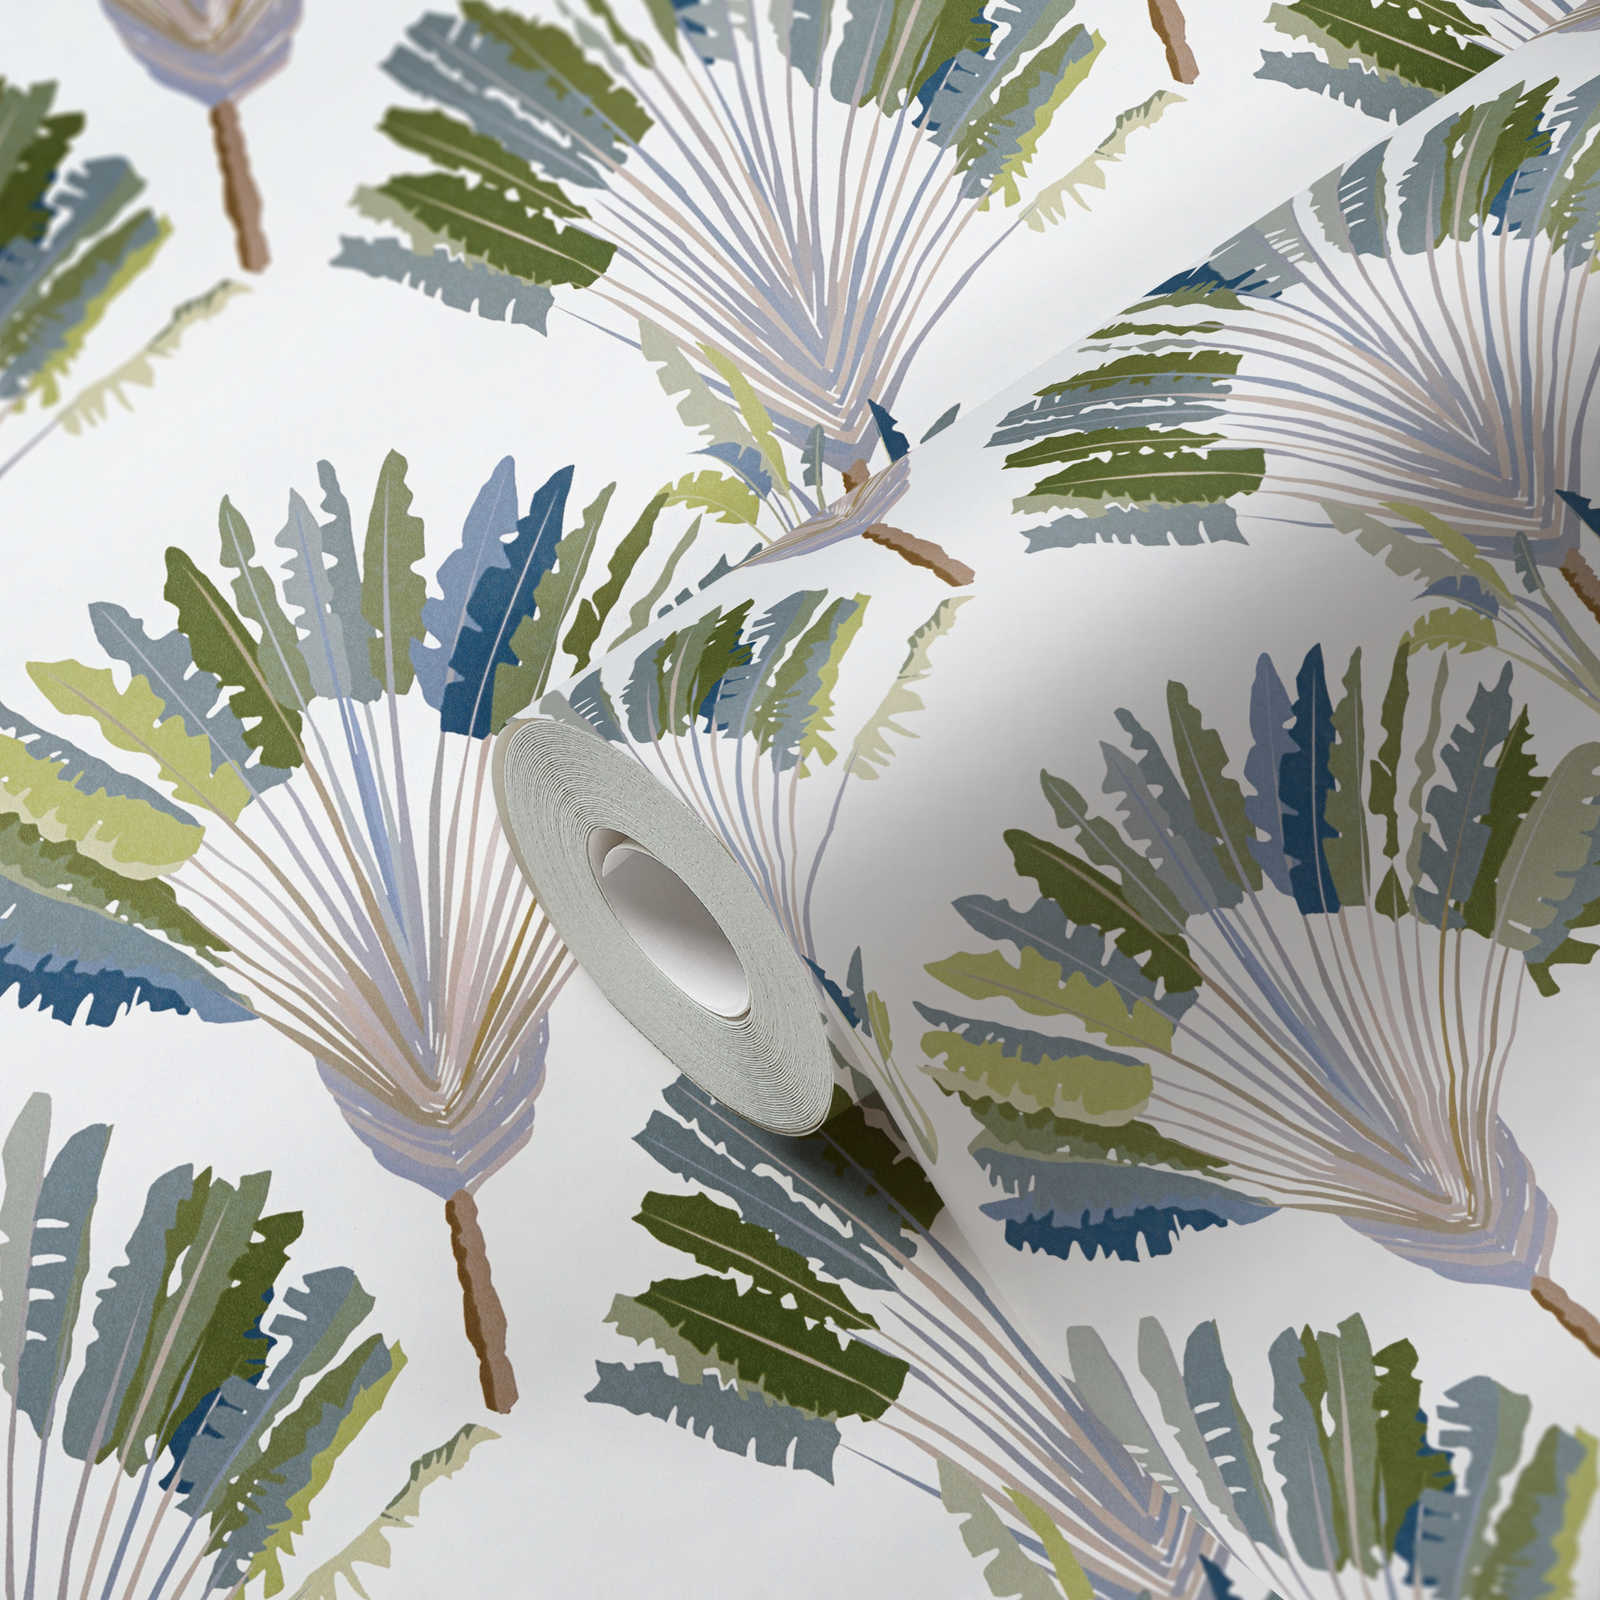             Tapete Palmenblätter & Stauden im abstrakten Muster – Grün, Weiß, Blau
        